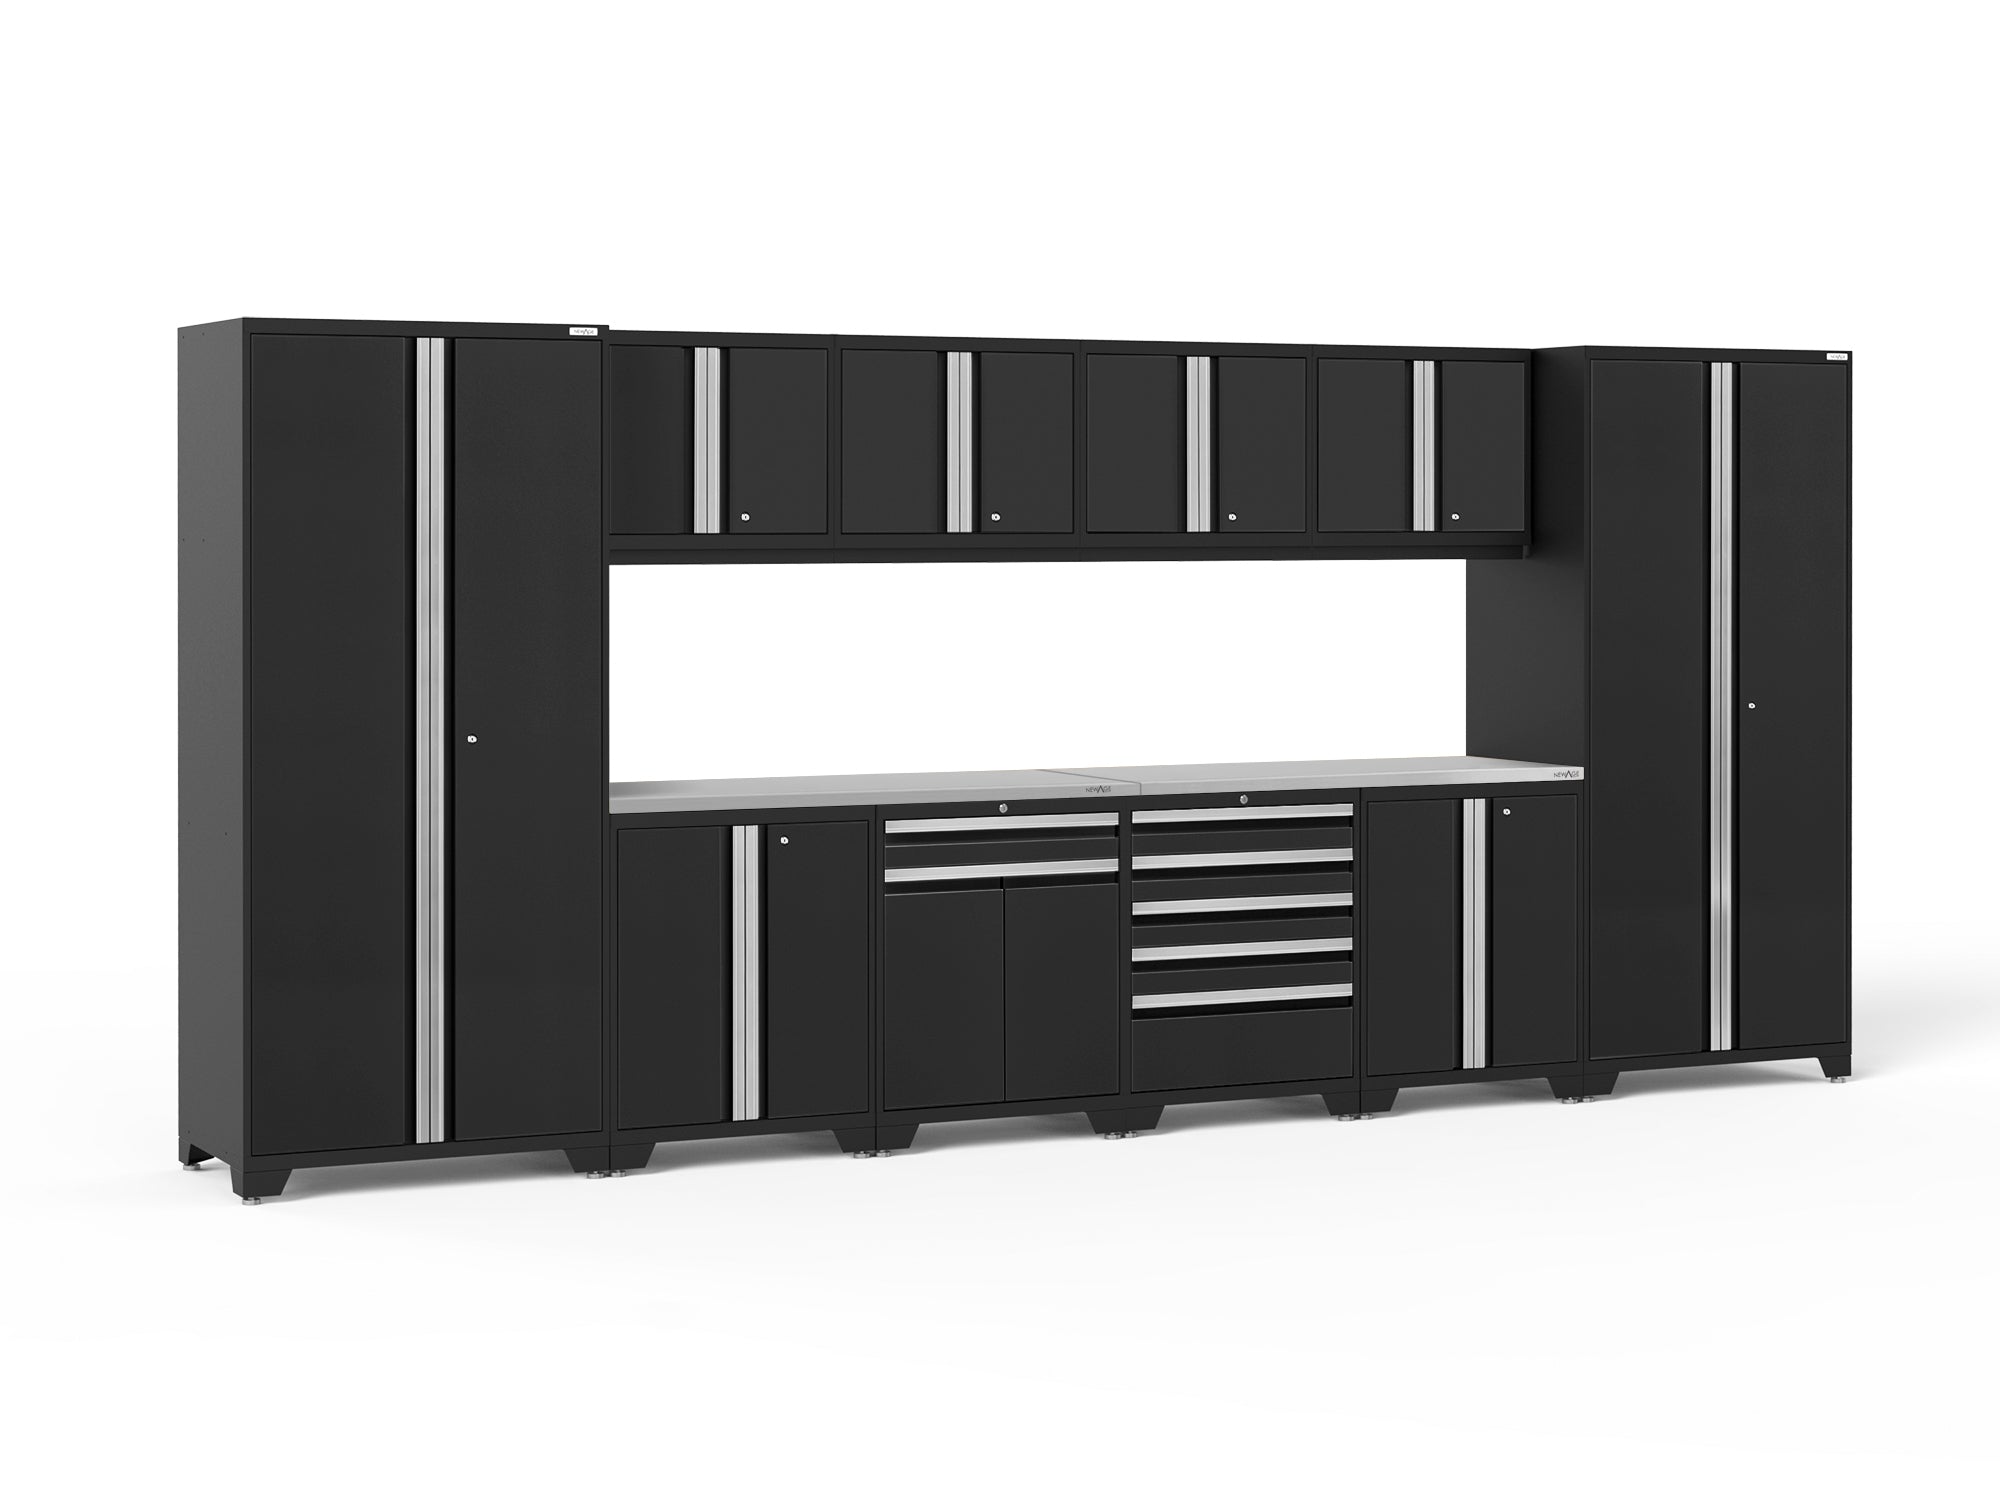 Newage Garage Cabinets Storage